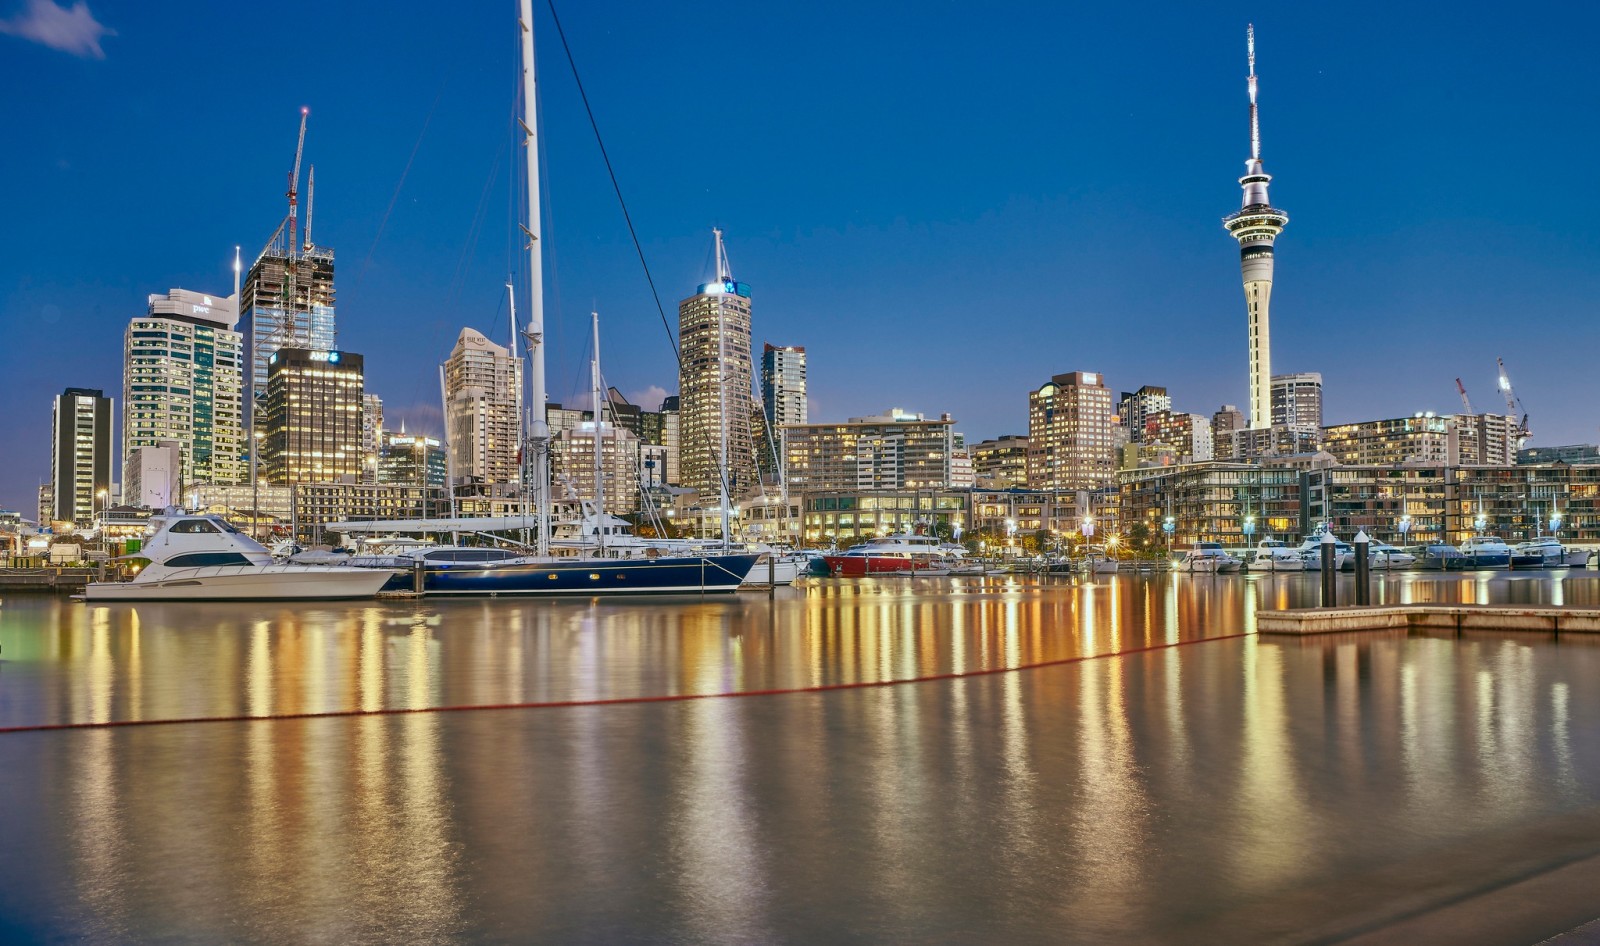 游艇, 摩天大楼, 家, 建造, 港口, 新西兰, 奥克兰市, 韦斯特海文码头